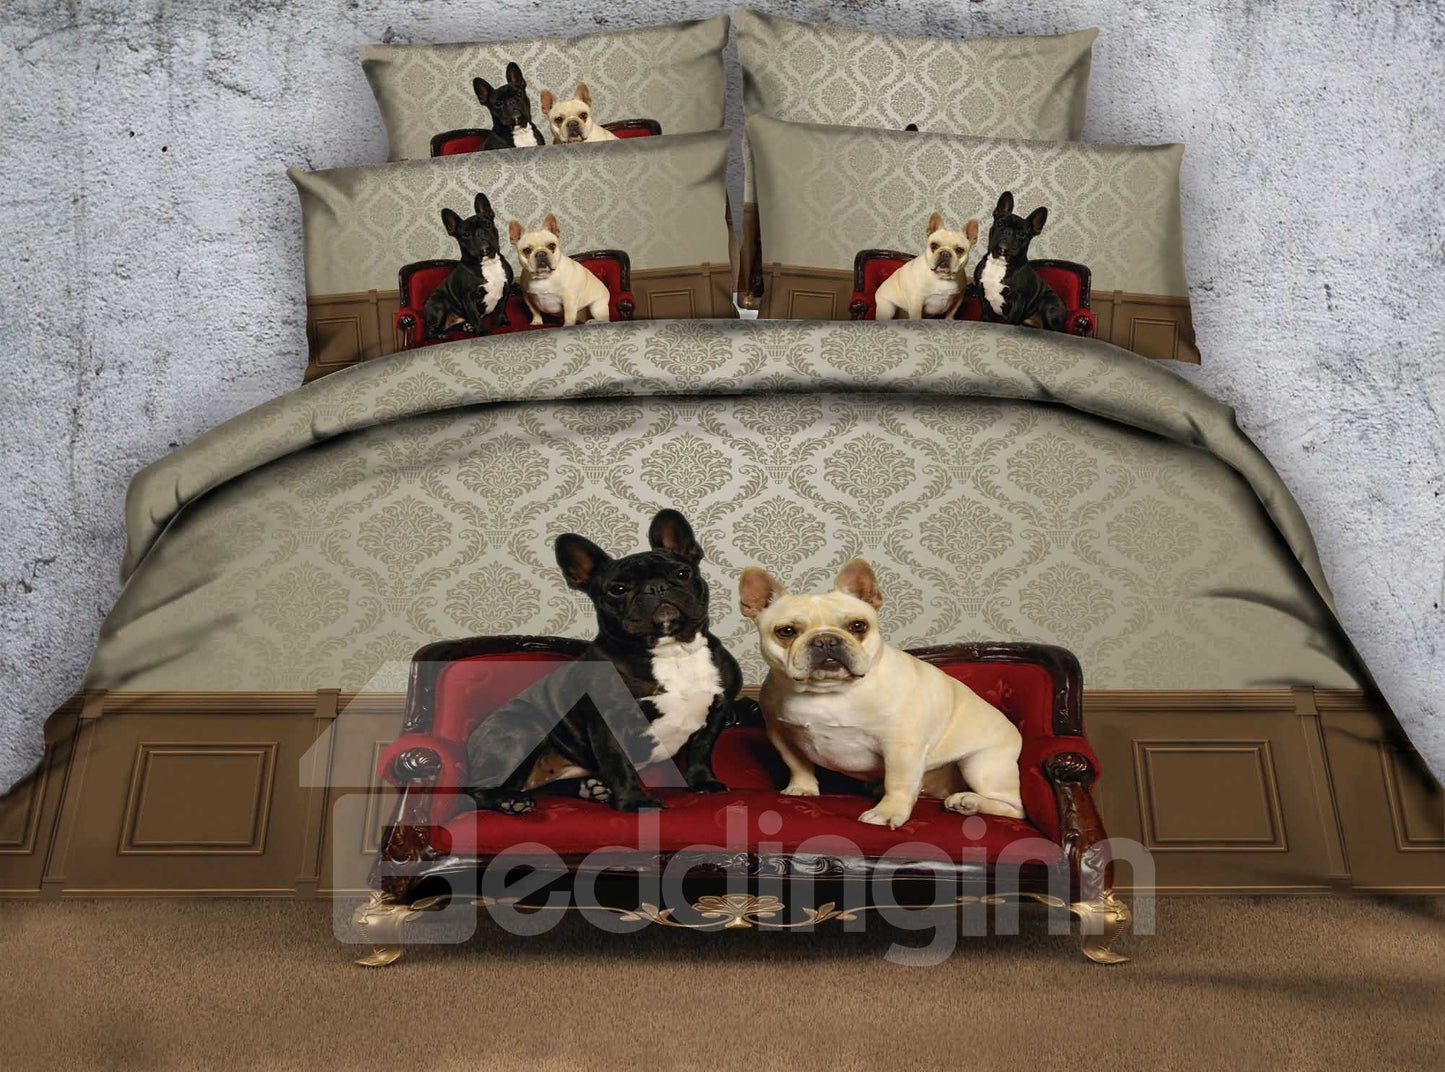 Bulldogs 3D sentados en un sofá Juegos de cama / fundas nórdicas impresas de 4 piezas